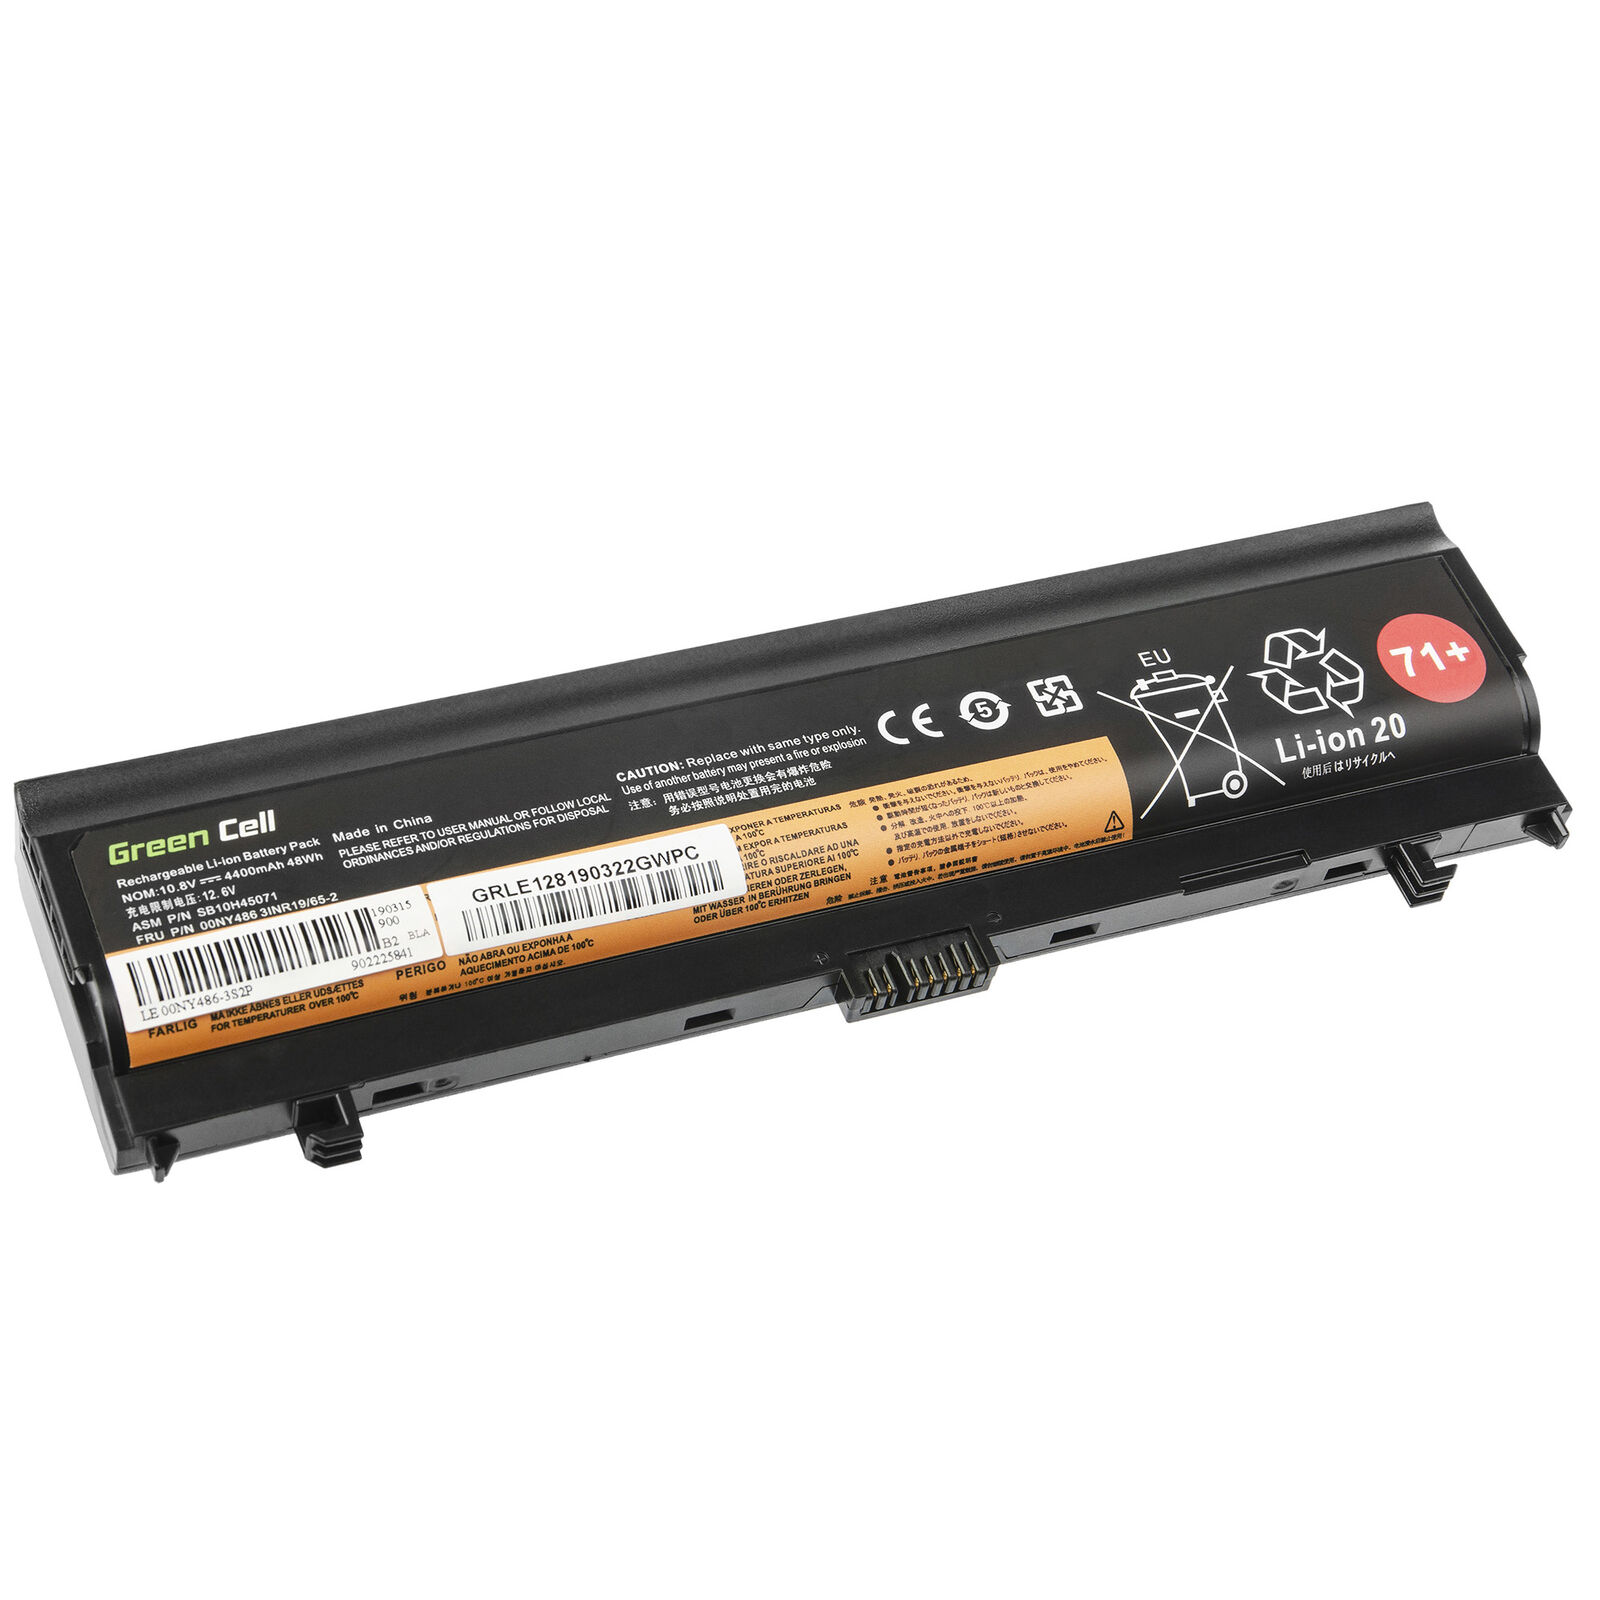 Batería para Lenovo ThinkPad L560 L570 00NY486 00NY487 00NY488 00NY489 4400mAh(compatible)